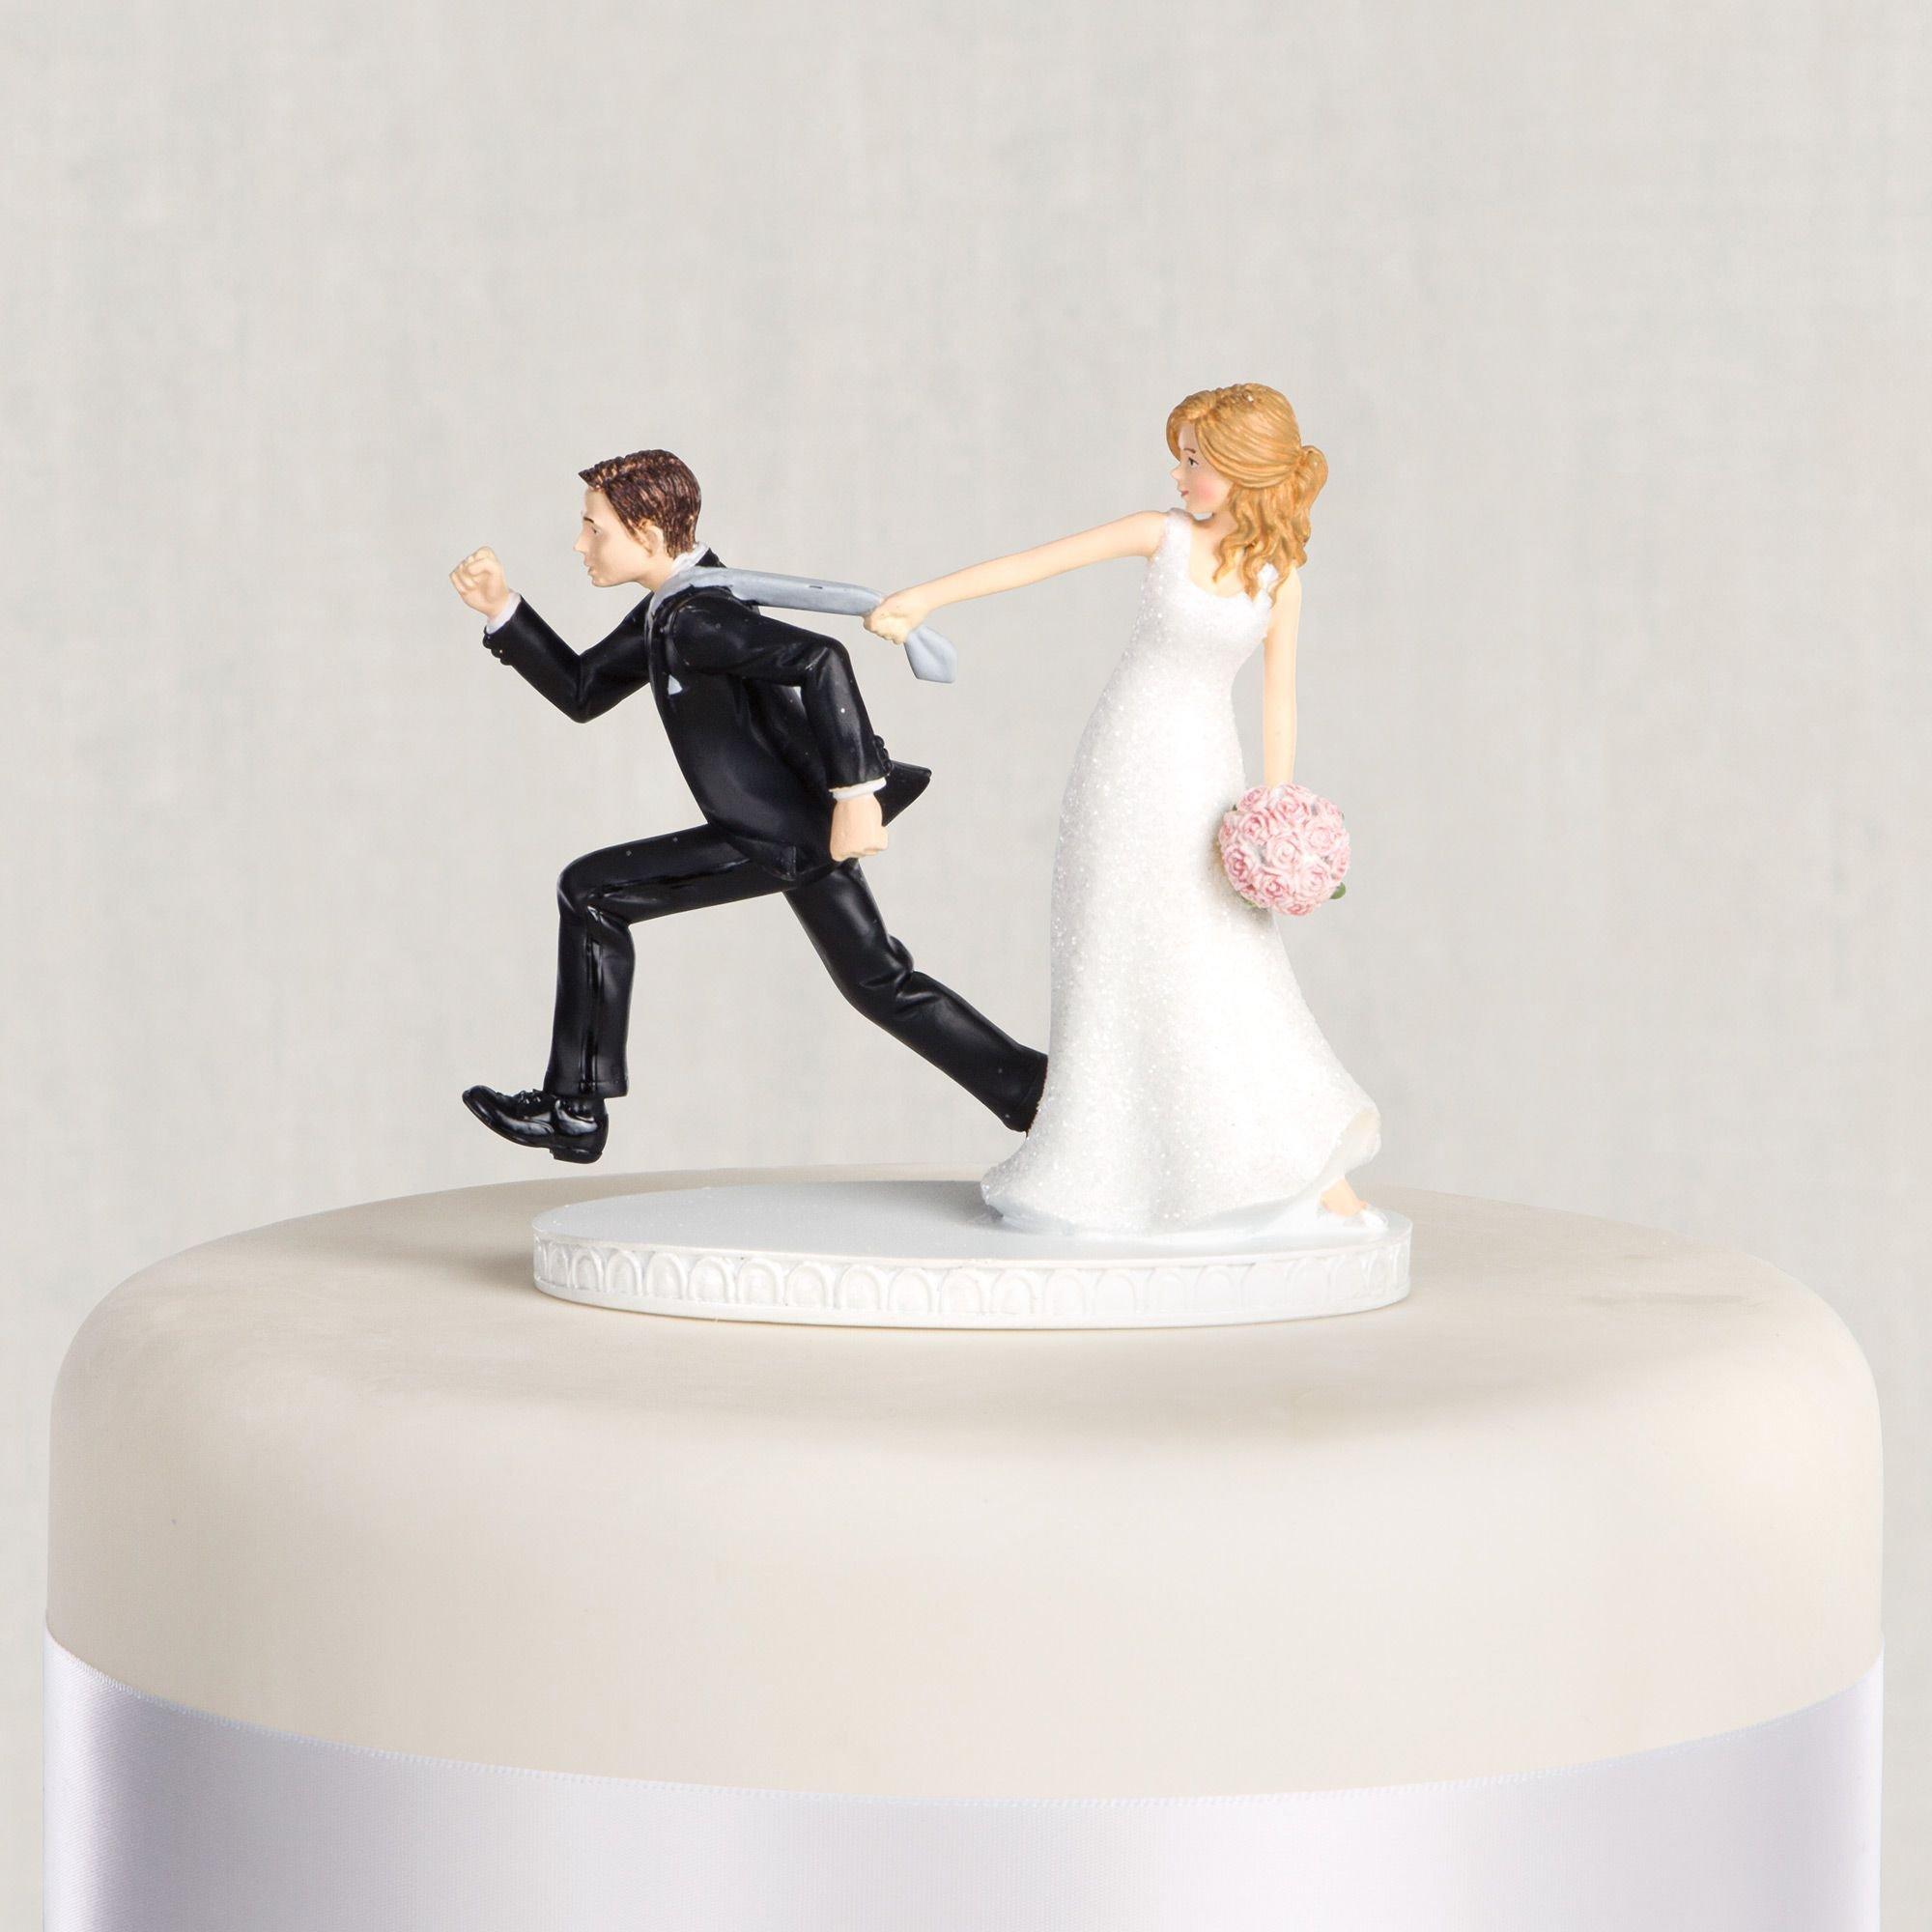 Hovedsagelig Sprællemand Forbipasserende Tie Puller Bride & Groom Wedding Cake Topper 4 1/8in | Party City